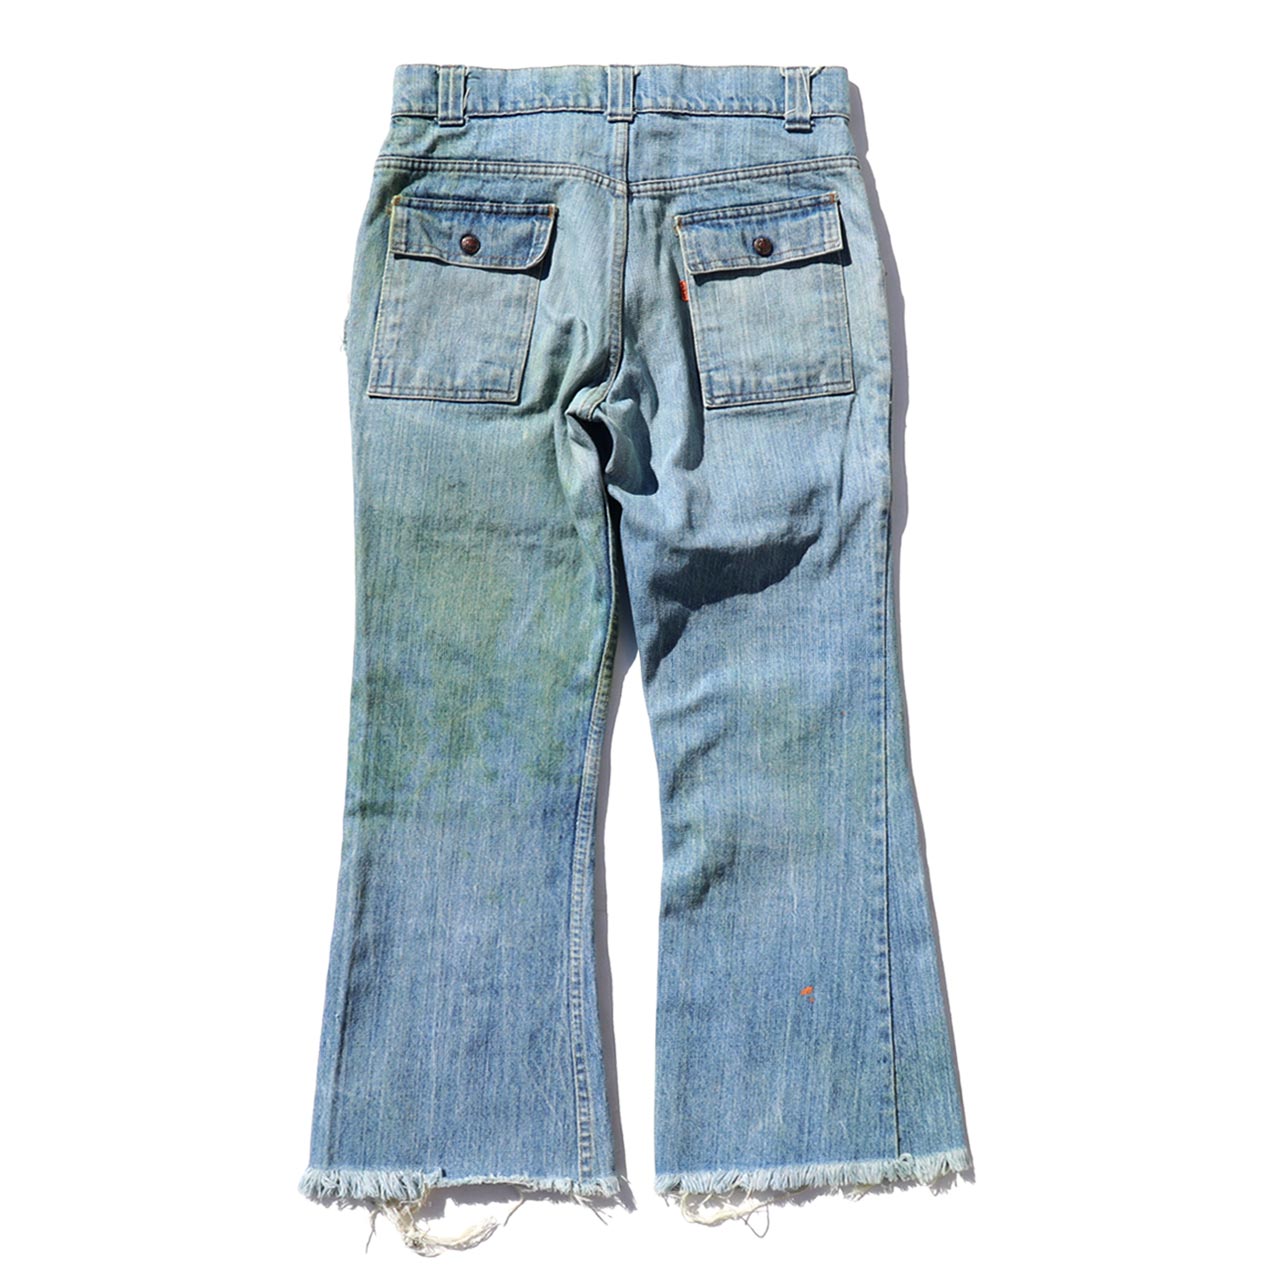 70's vintage levi's bush denim pants